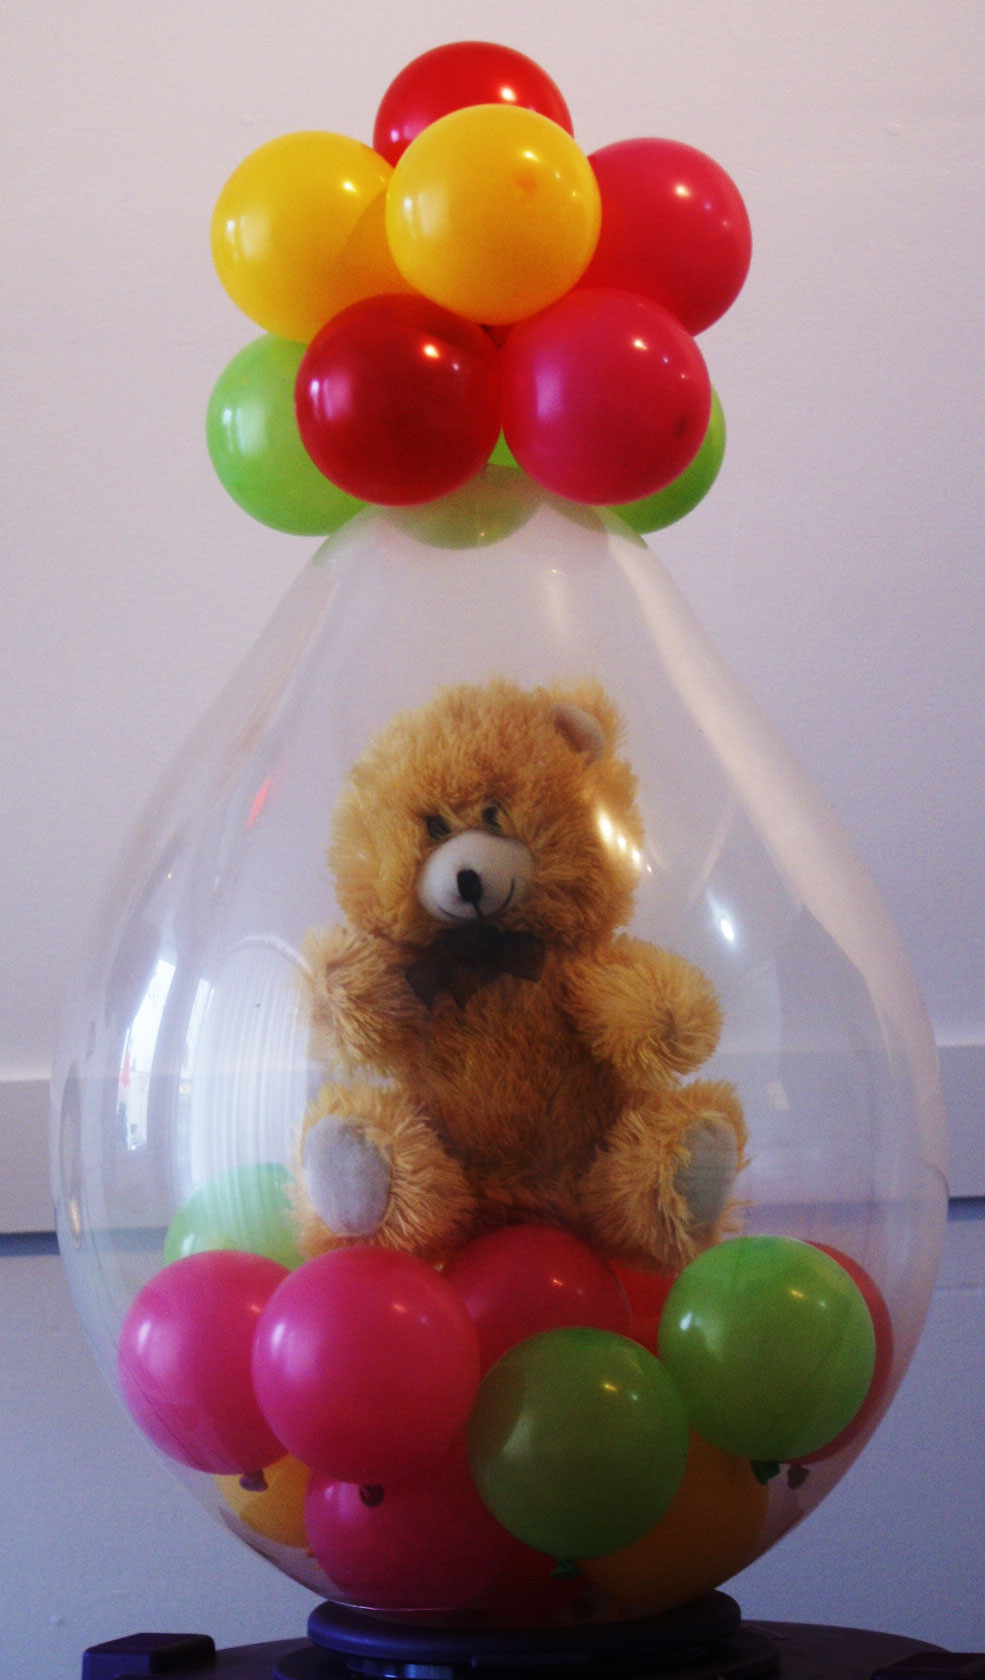 balloons with teddy bear inside